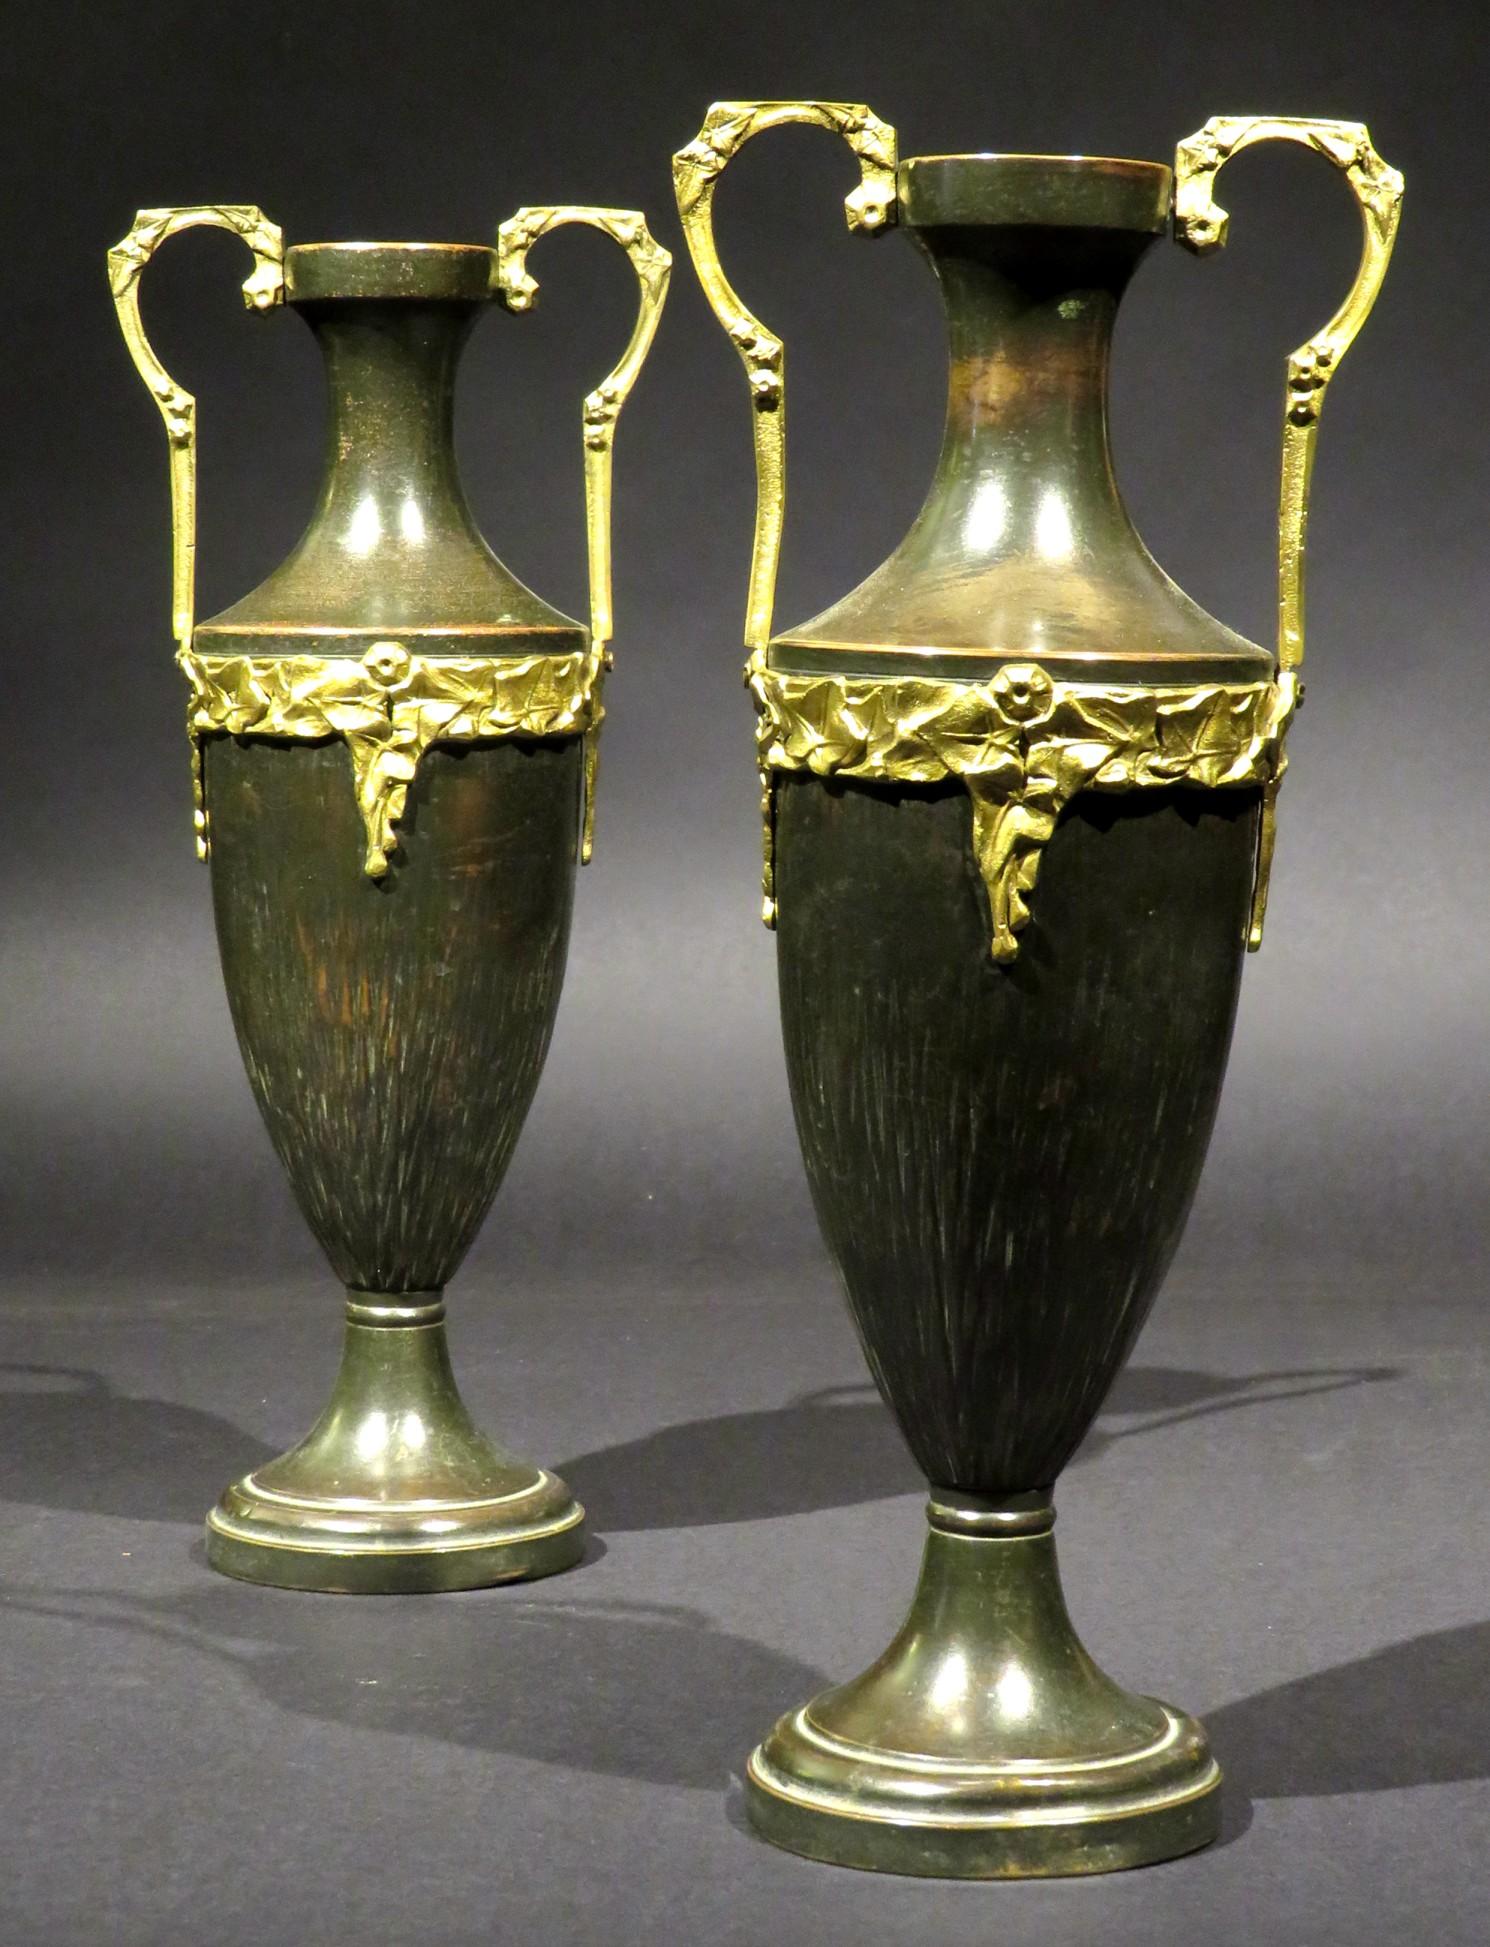 Une très belle paire d'urnes en cuivre patiné dans le goût néoclassique. 
Les deux corps de forme ovoïde présentent des motifs linéaires organiques en relief, s'élevant vers des montures en bronze doré et des poignées en kylix, le tout reposant sur